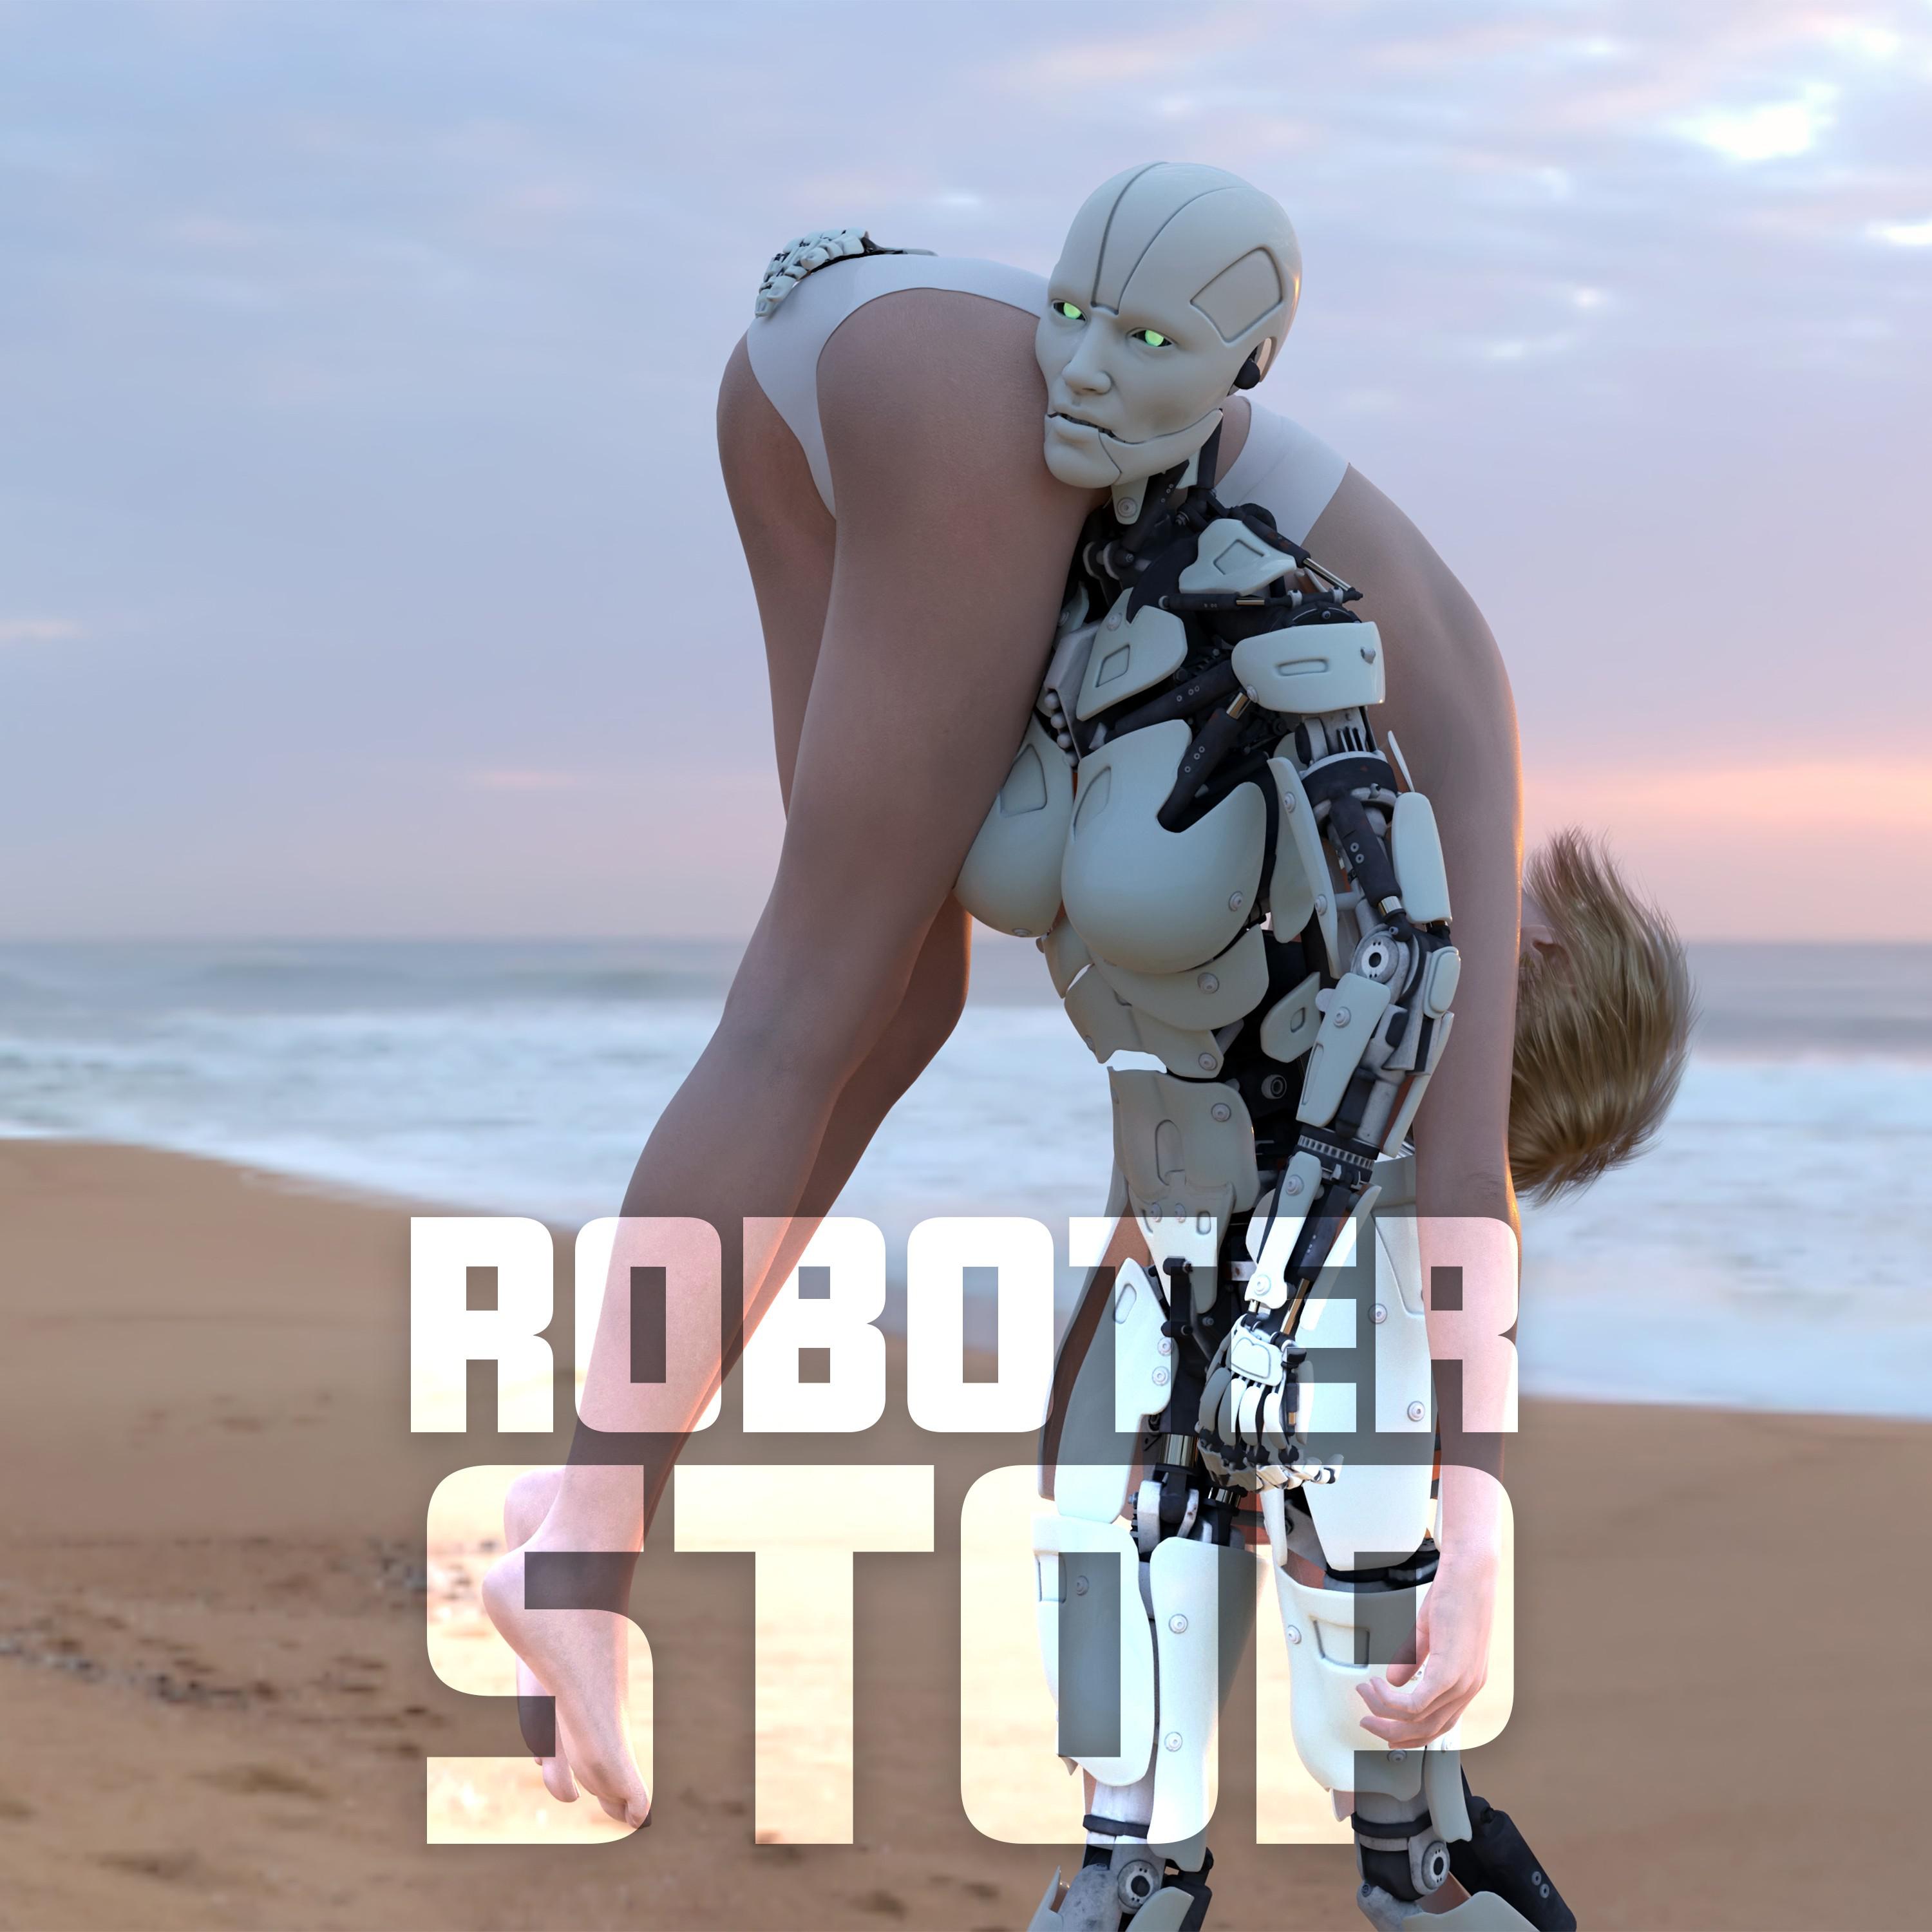 Roboter - Schubidubapbap